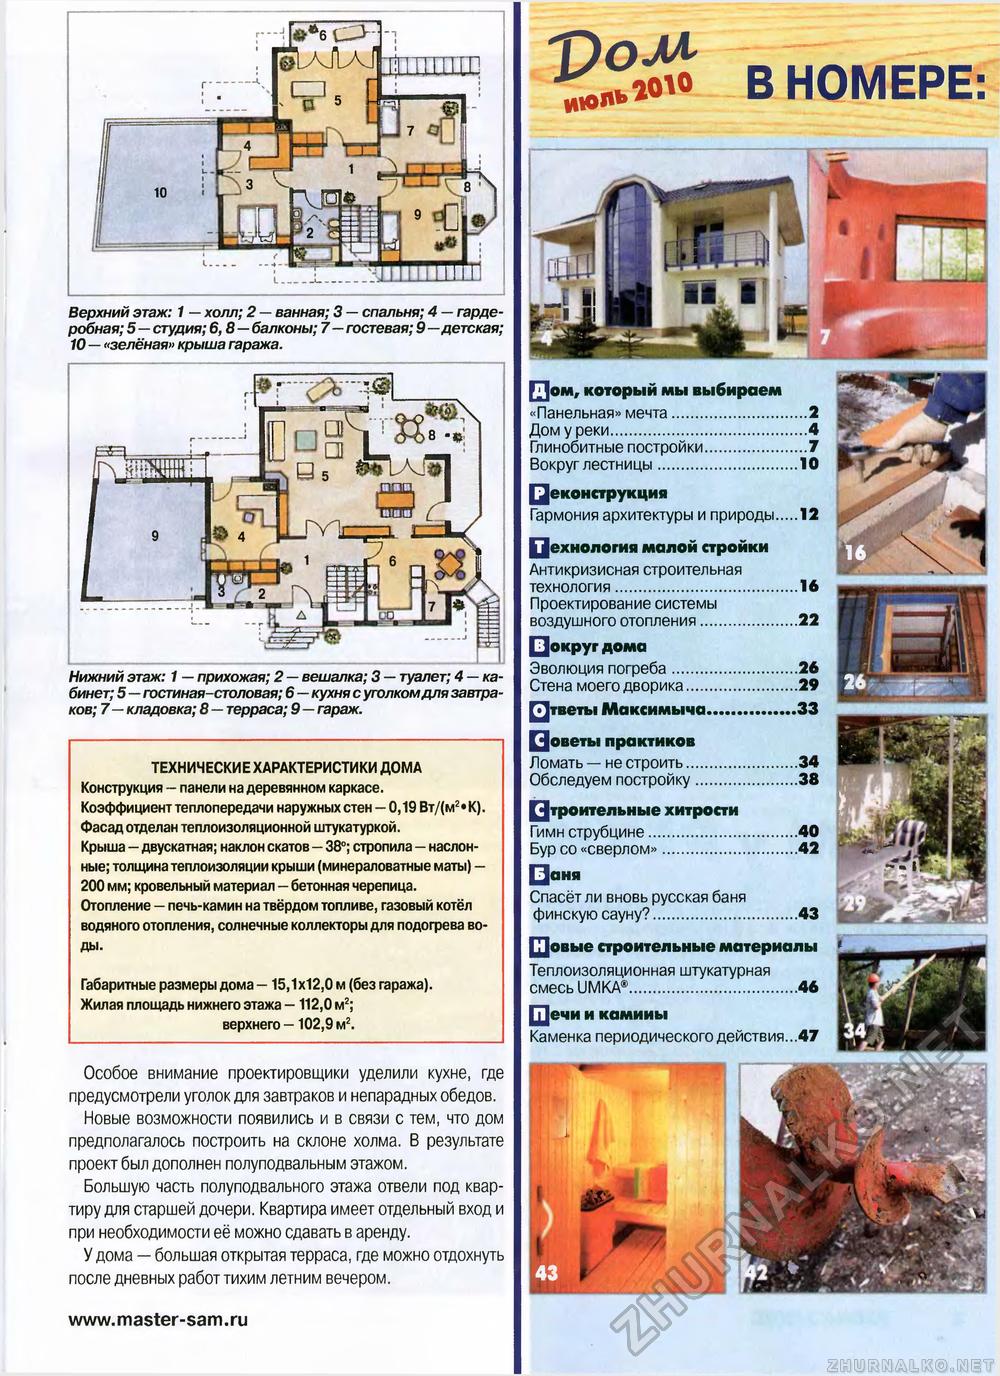 Дом 2010-07, страница 3